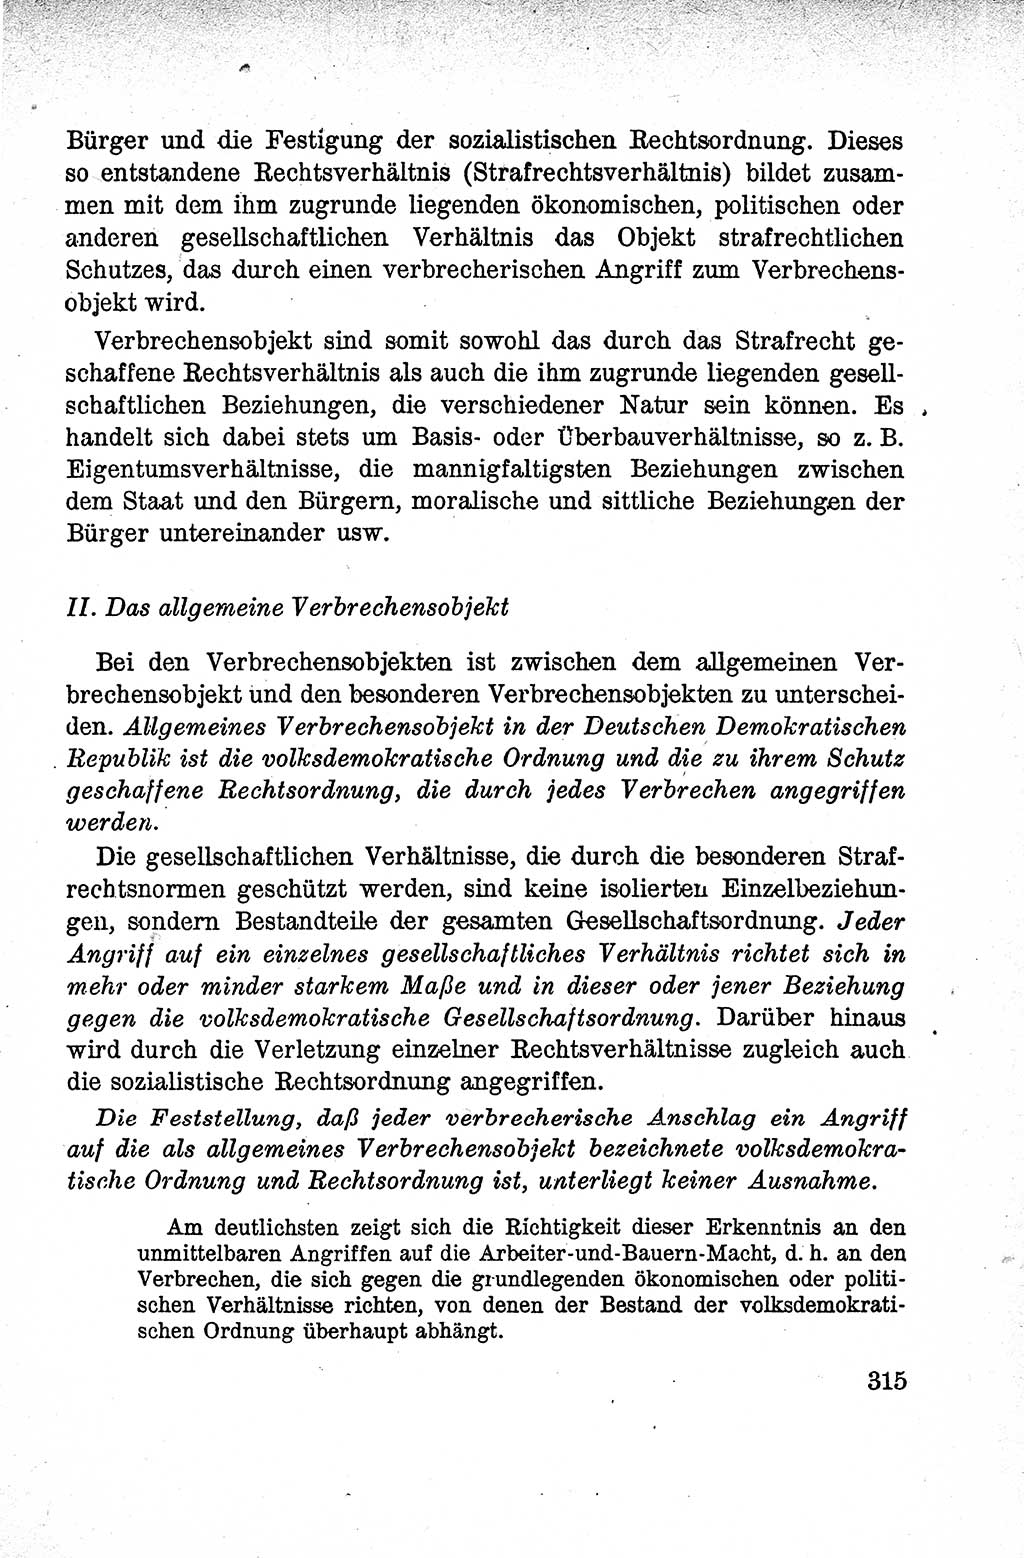 Lehrbuch des Strafrechts der Deutschen Demokratischen Republik (DDR), Allgemeiner Teil 1959, Seite 315 (Lb. Strafr. DDR AT 1959, S. 315)